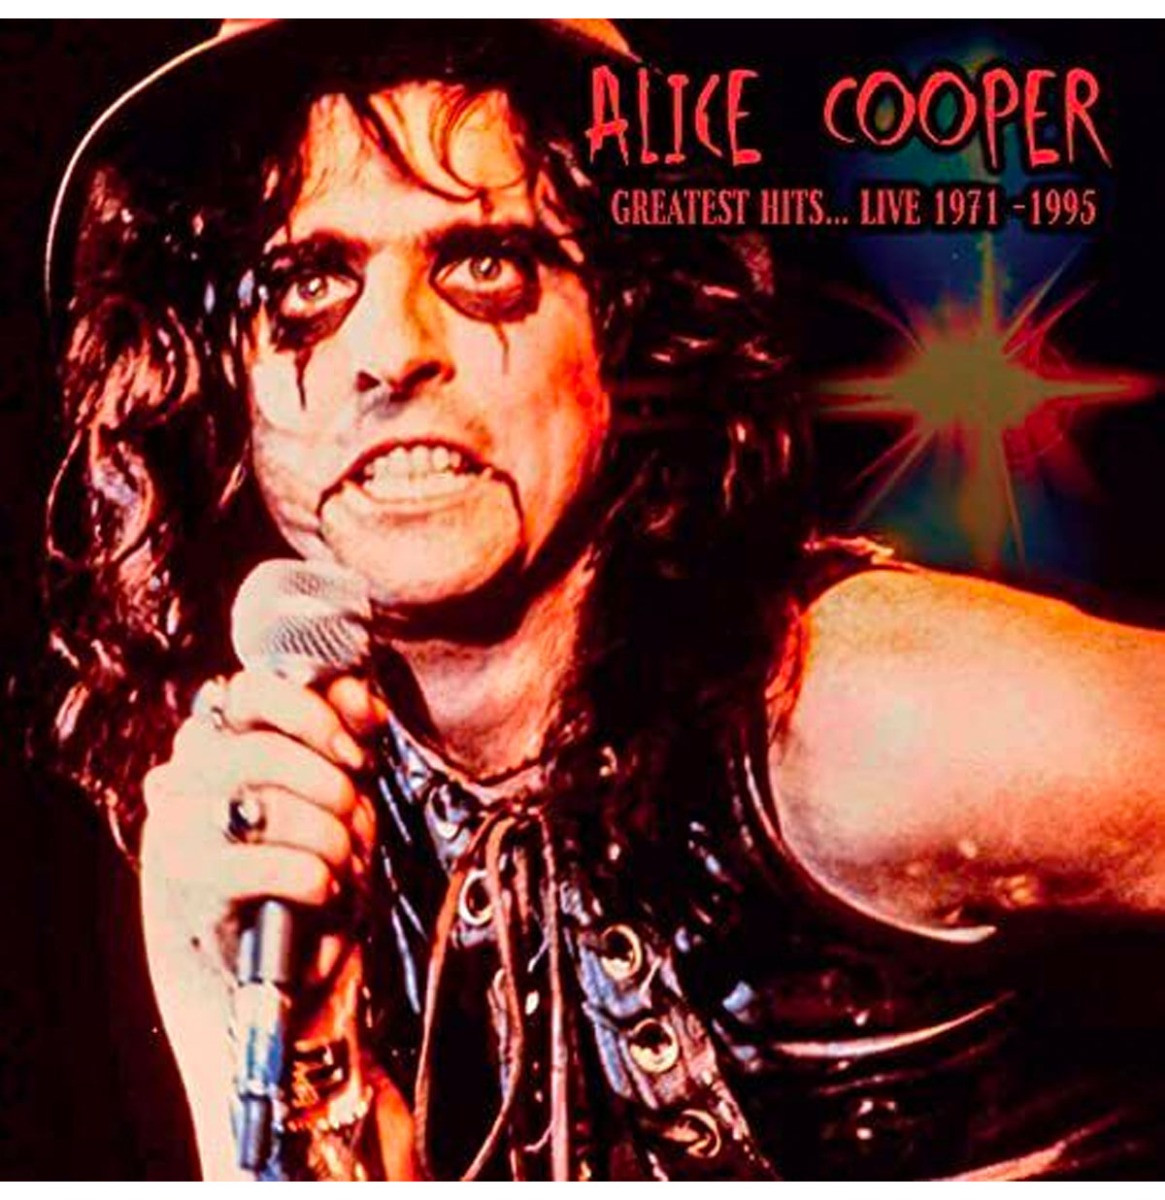 Alice Cooper - Greatest Hits... Live 1971-1995 (Virgin Vinyl) LP